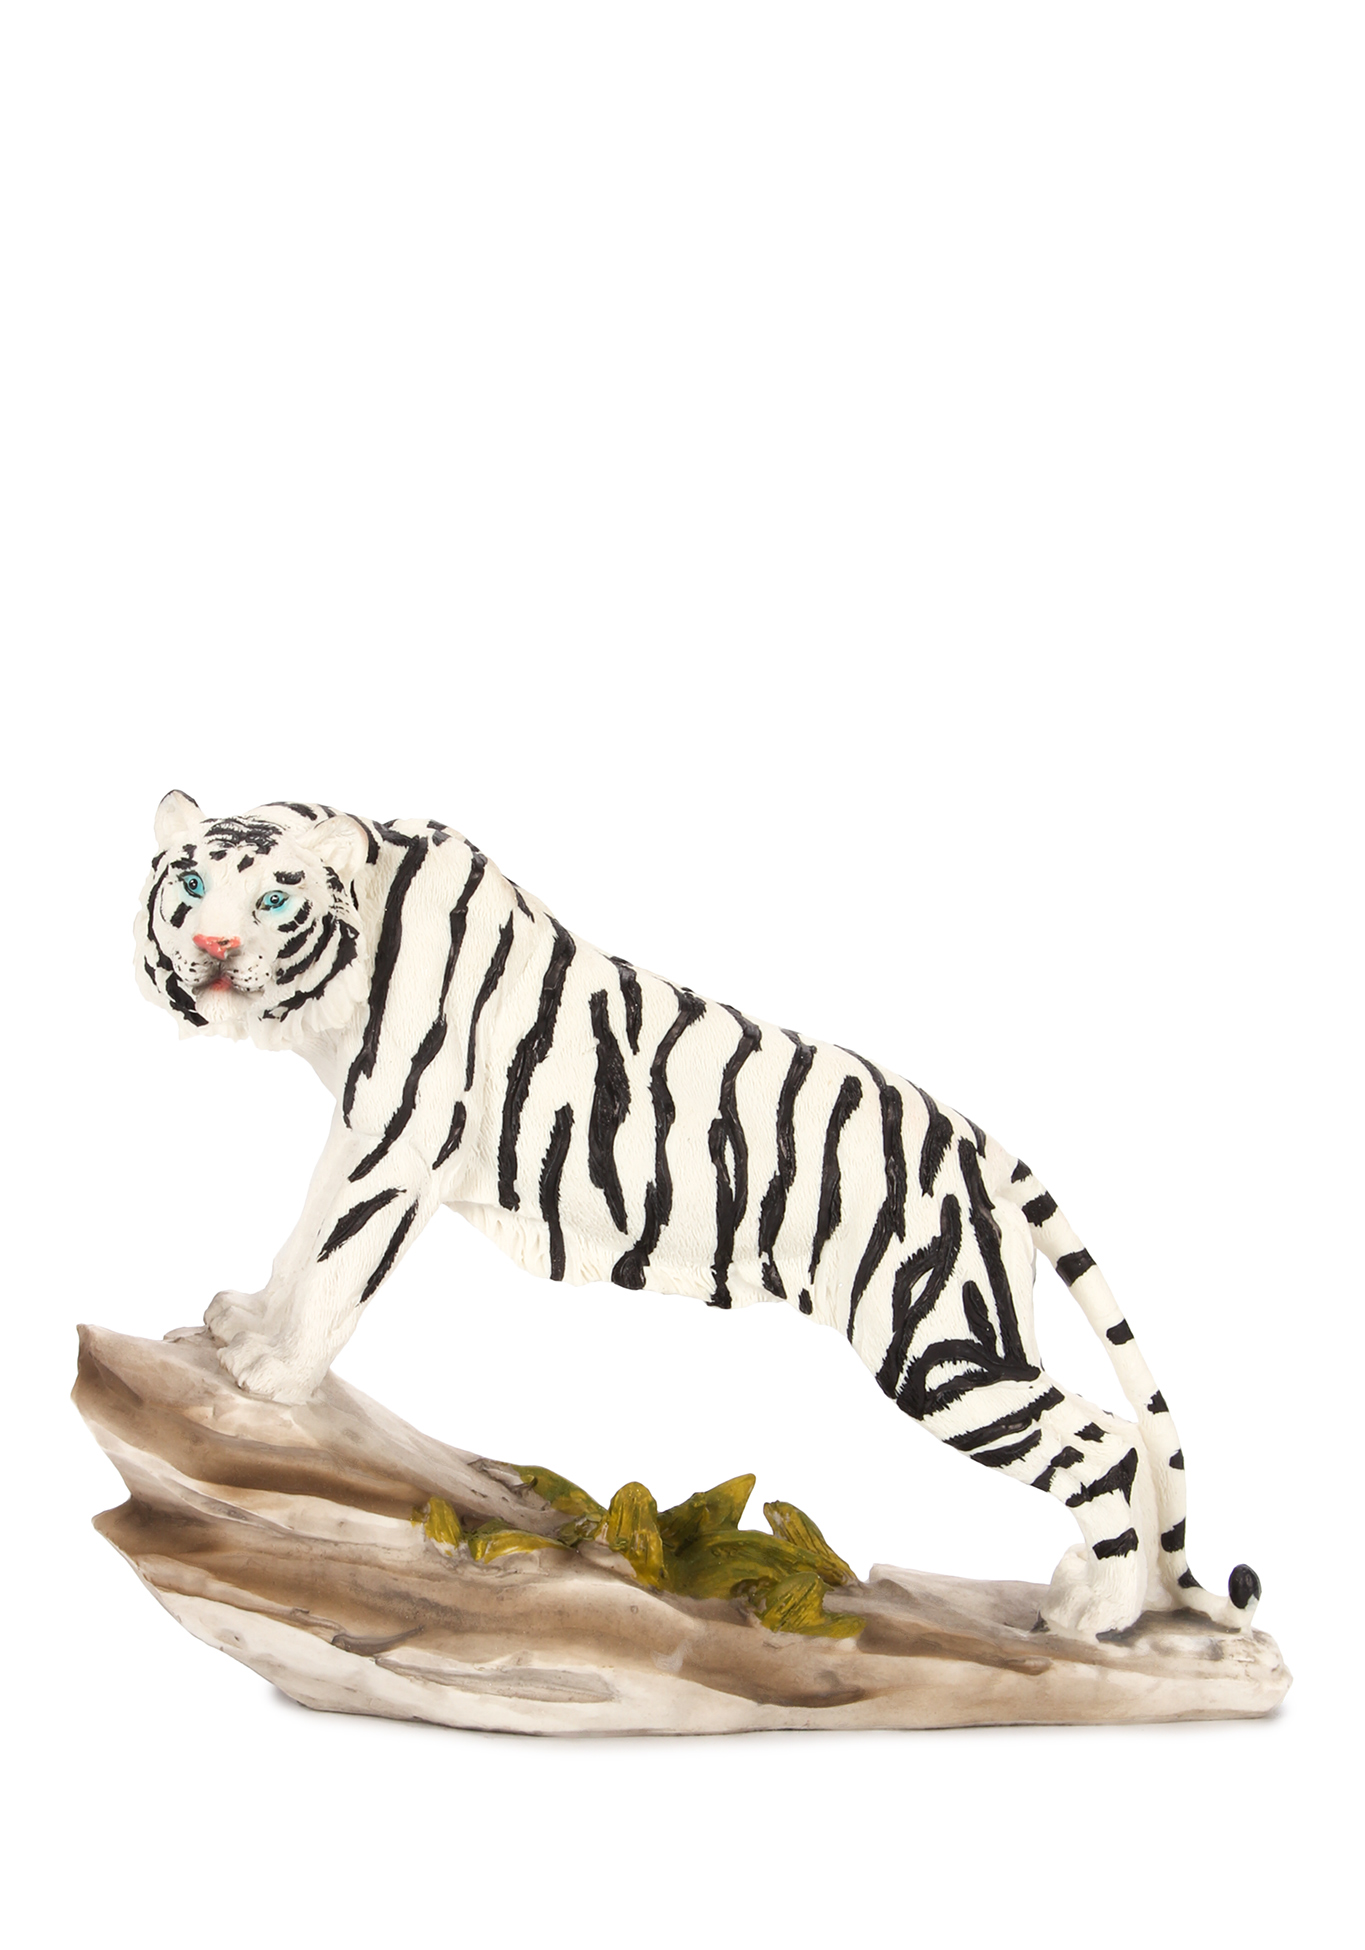 Оберег интерьерный "Тигр" Lefard, цвет стойка бенгальского тигра, размер 20,5*7*15 см - фото 4